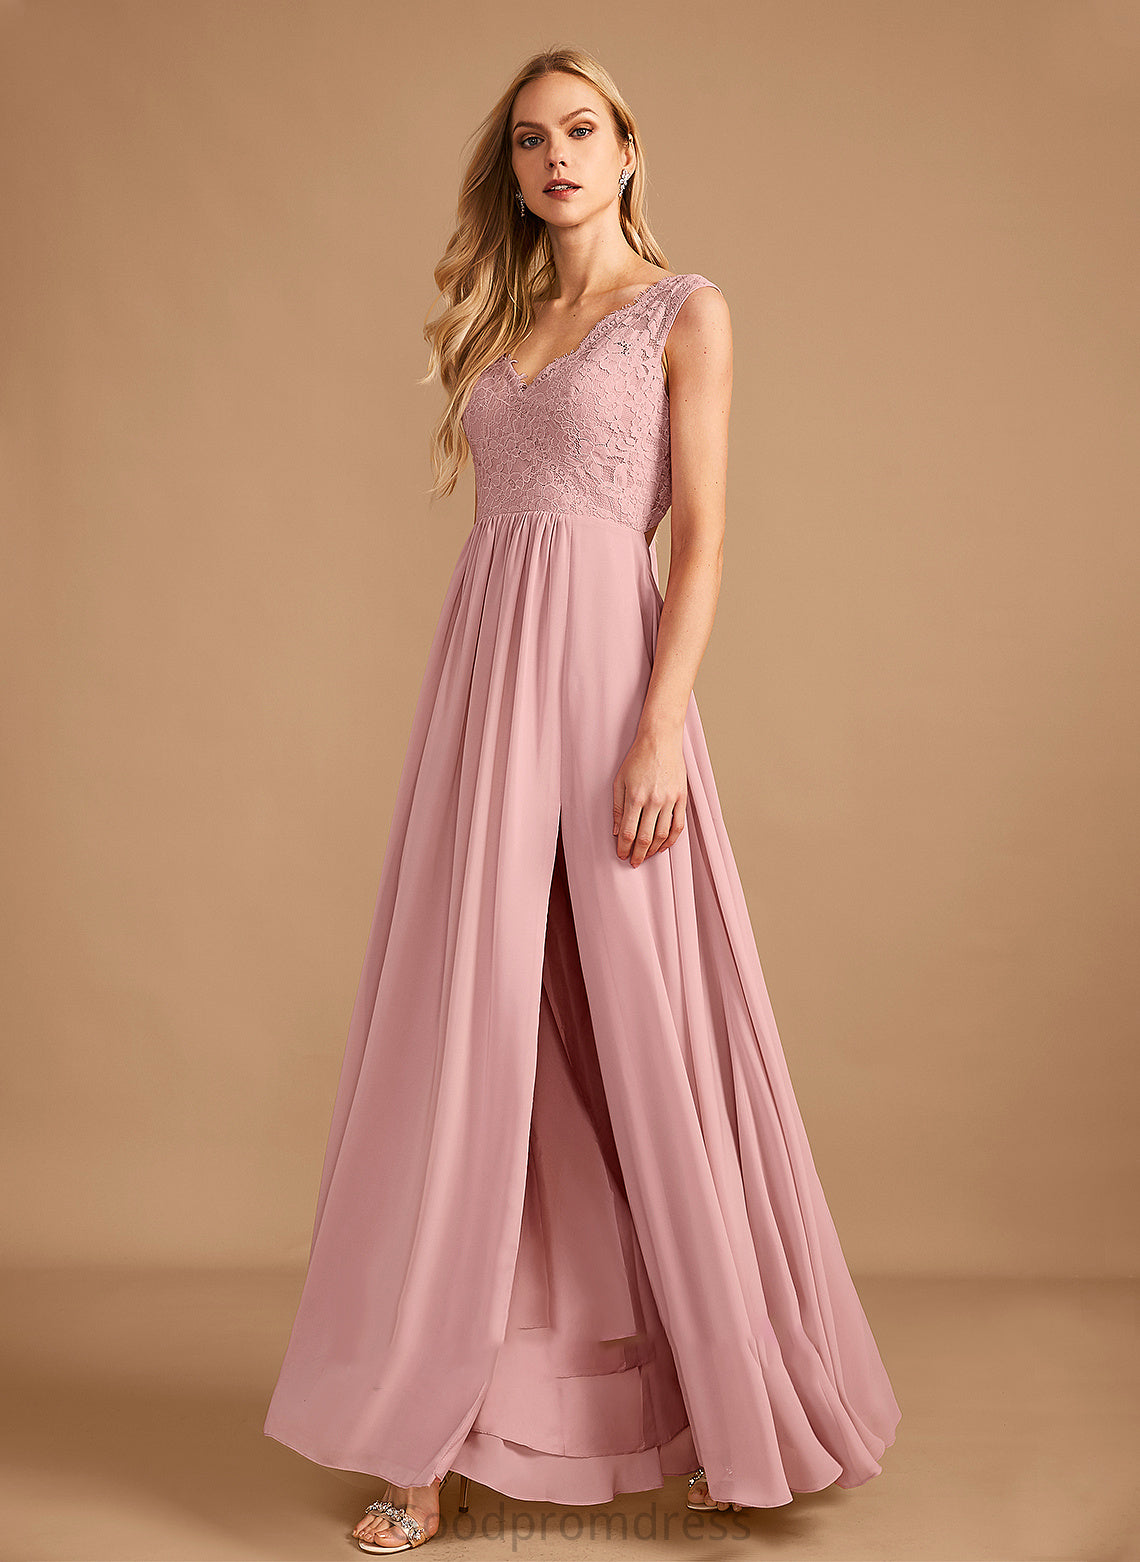 Silhouette Fabric Floor-Length Length V-neck A-Line Neckline Embellishment Pockets SplitFront Clarissa Floor Length Bridesmaid Dresses